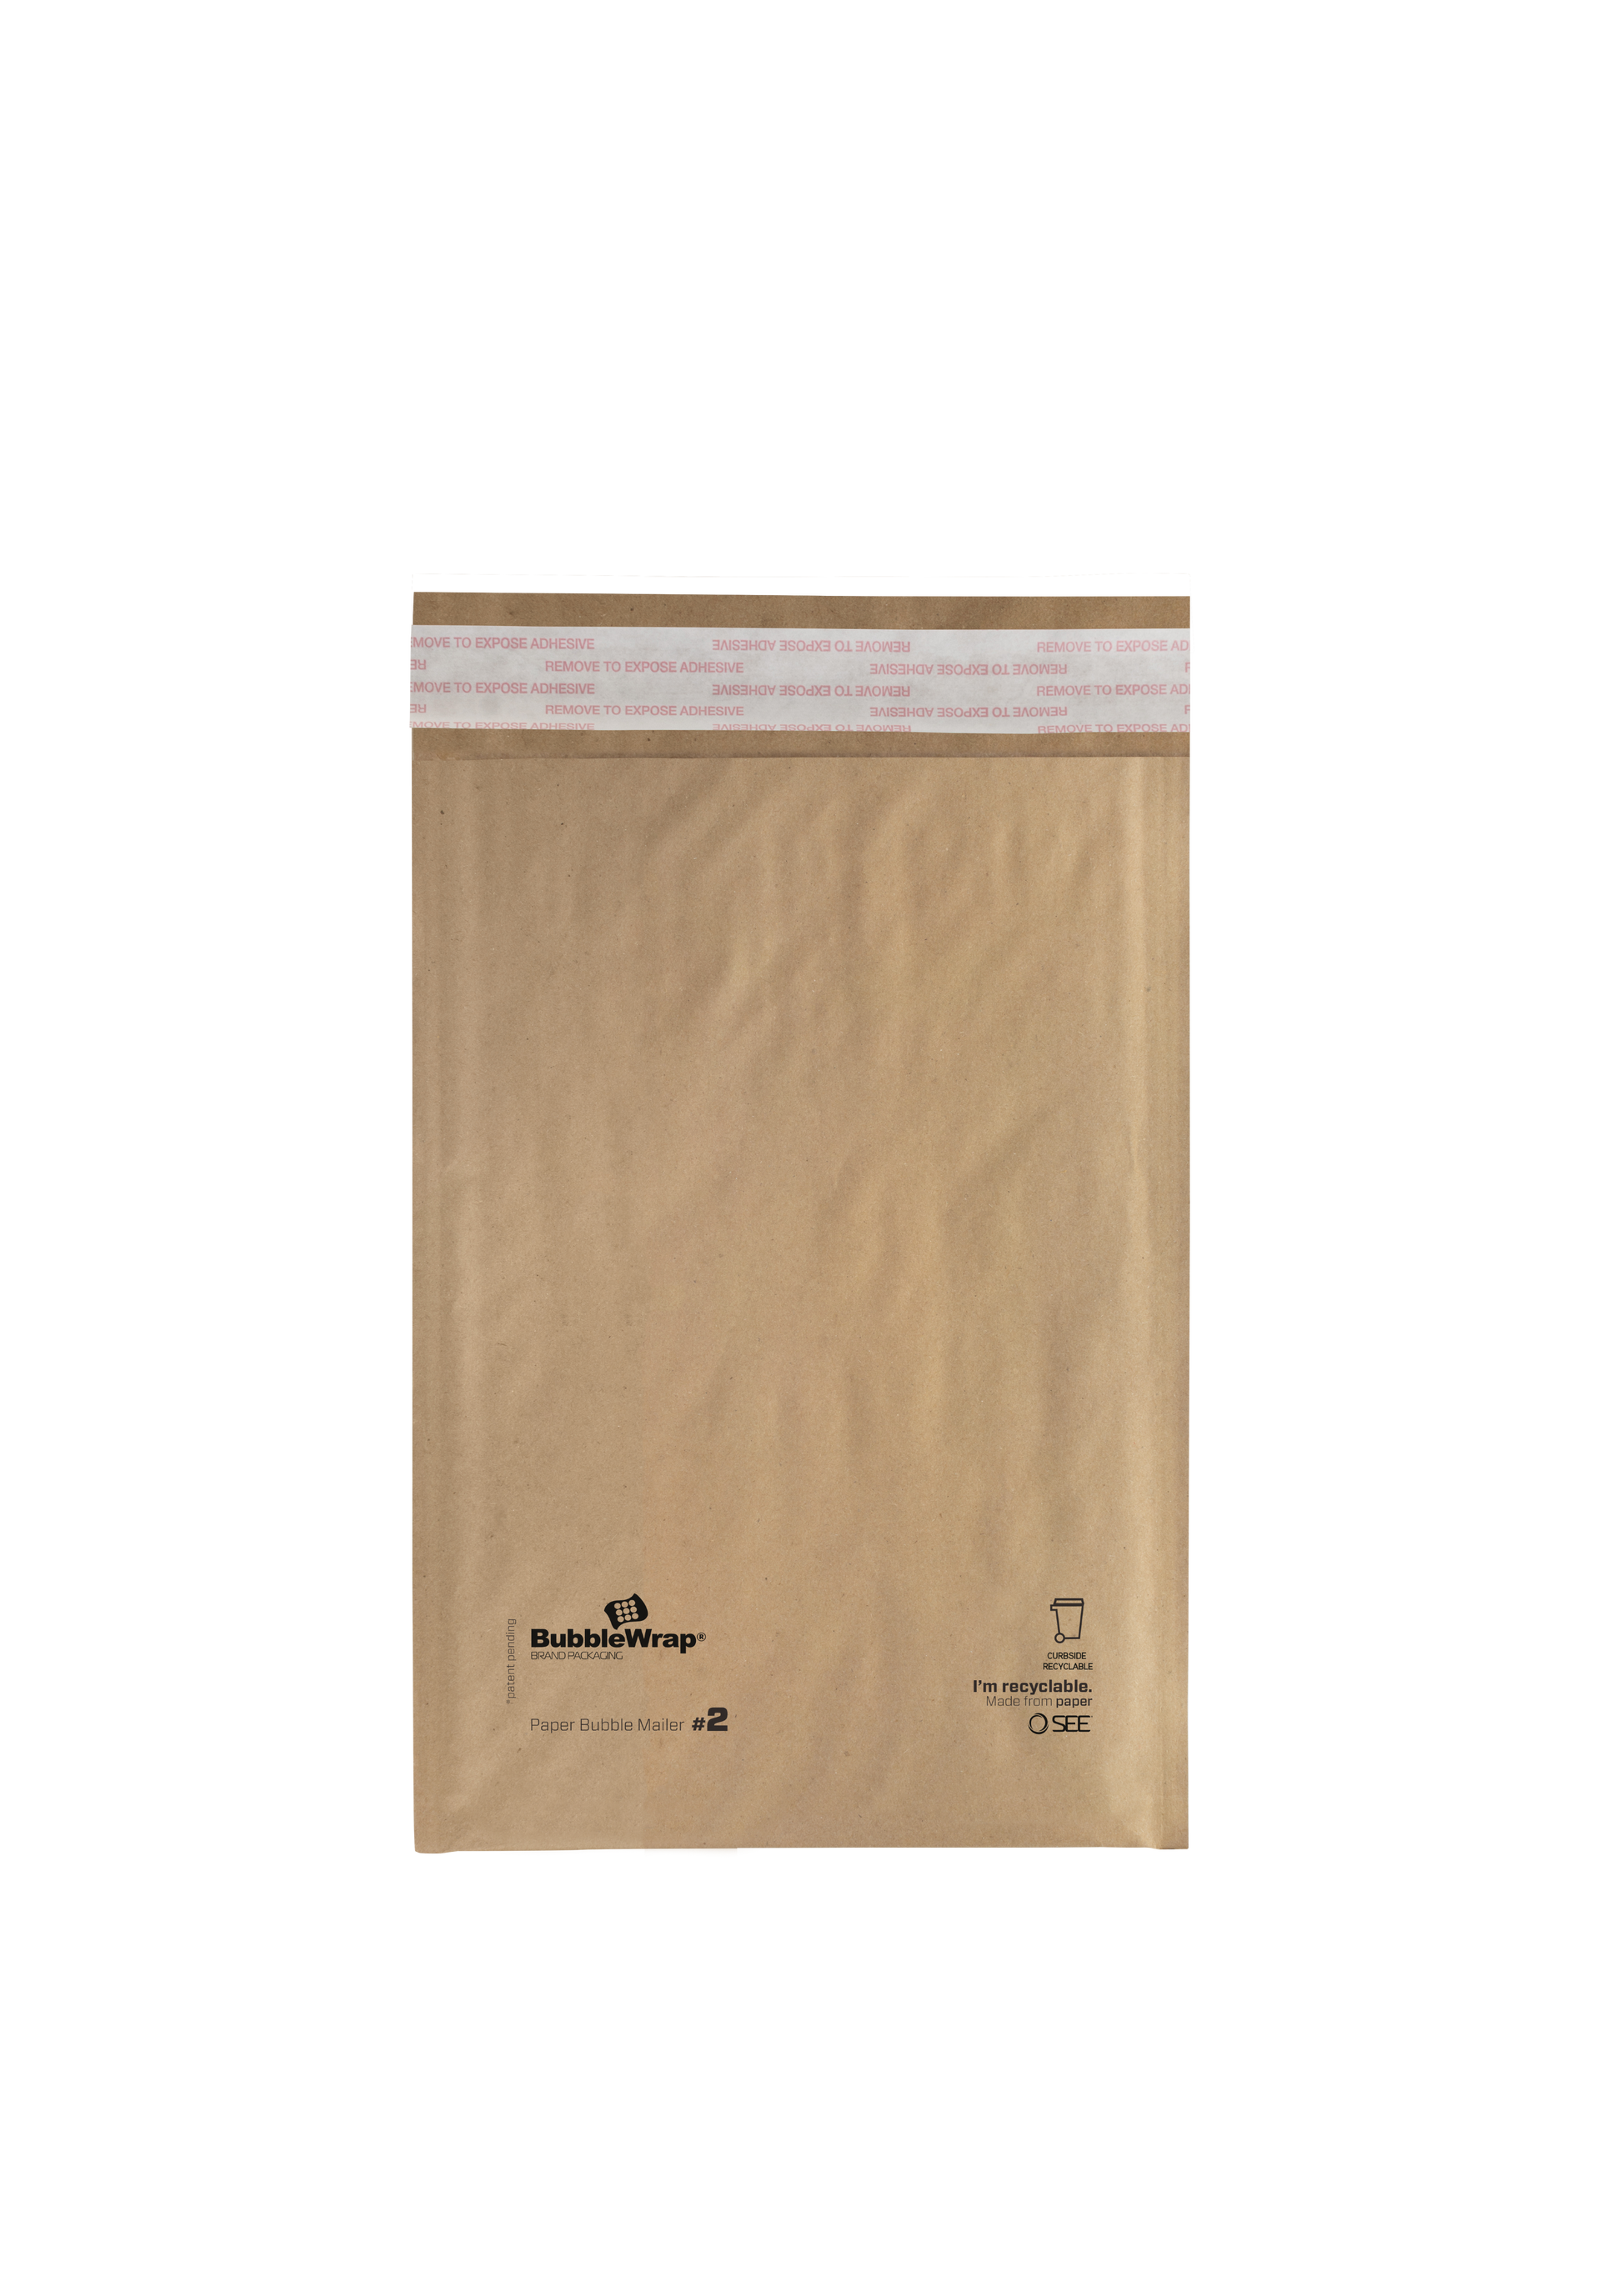 Food Grade Tissue Paper - Kraft 9 x 12